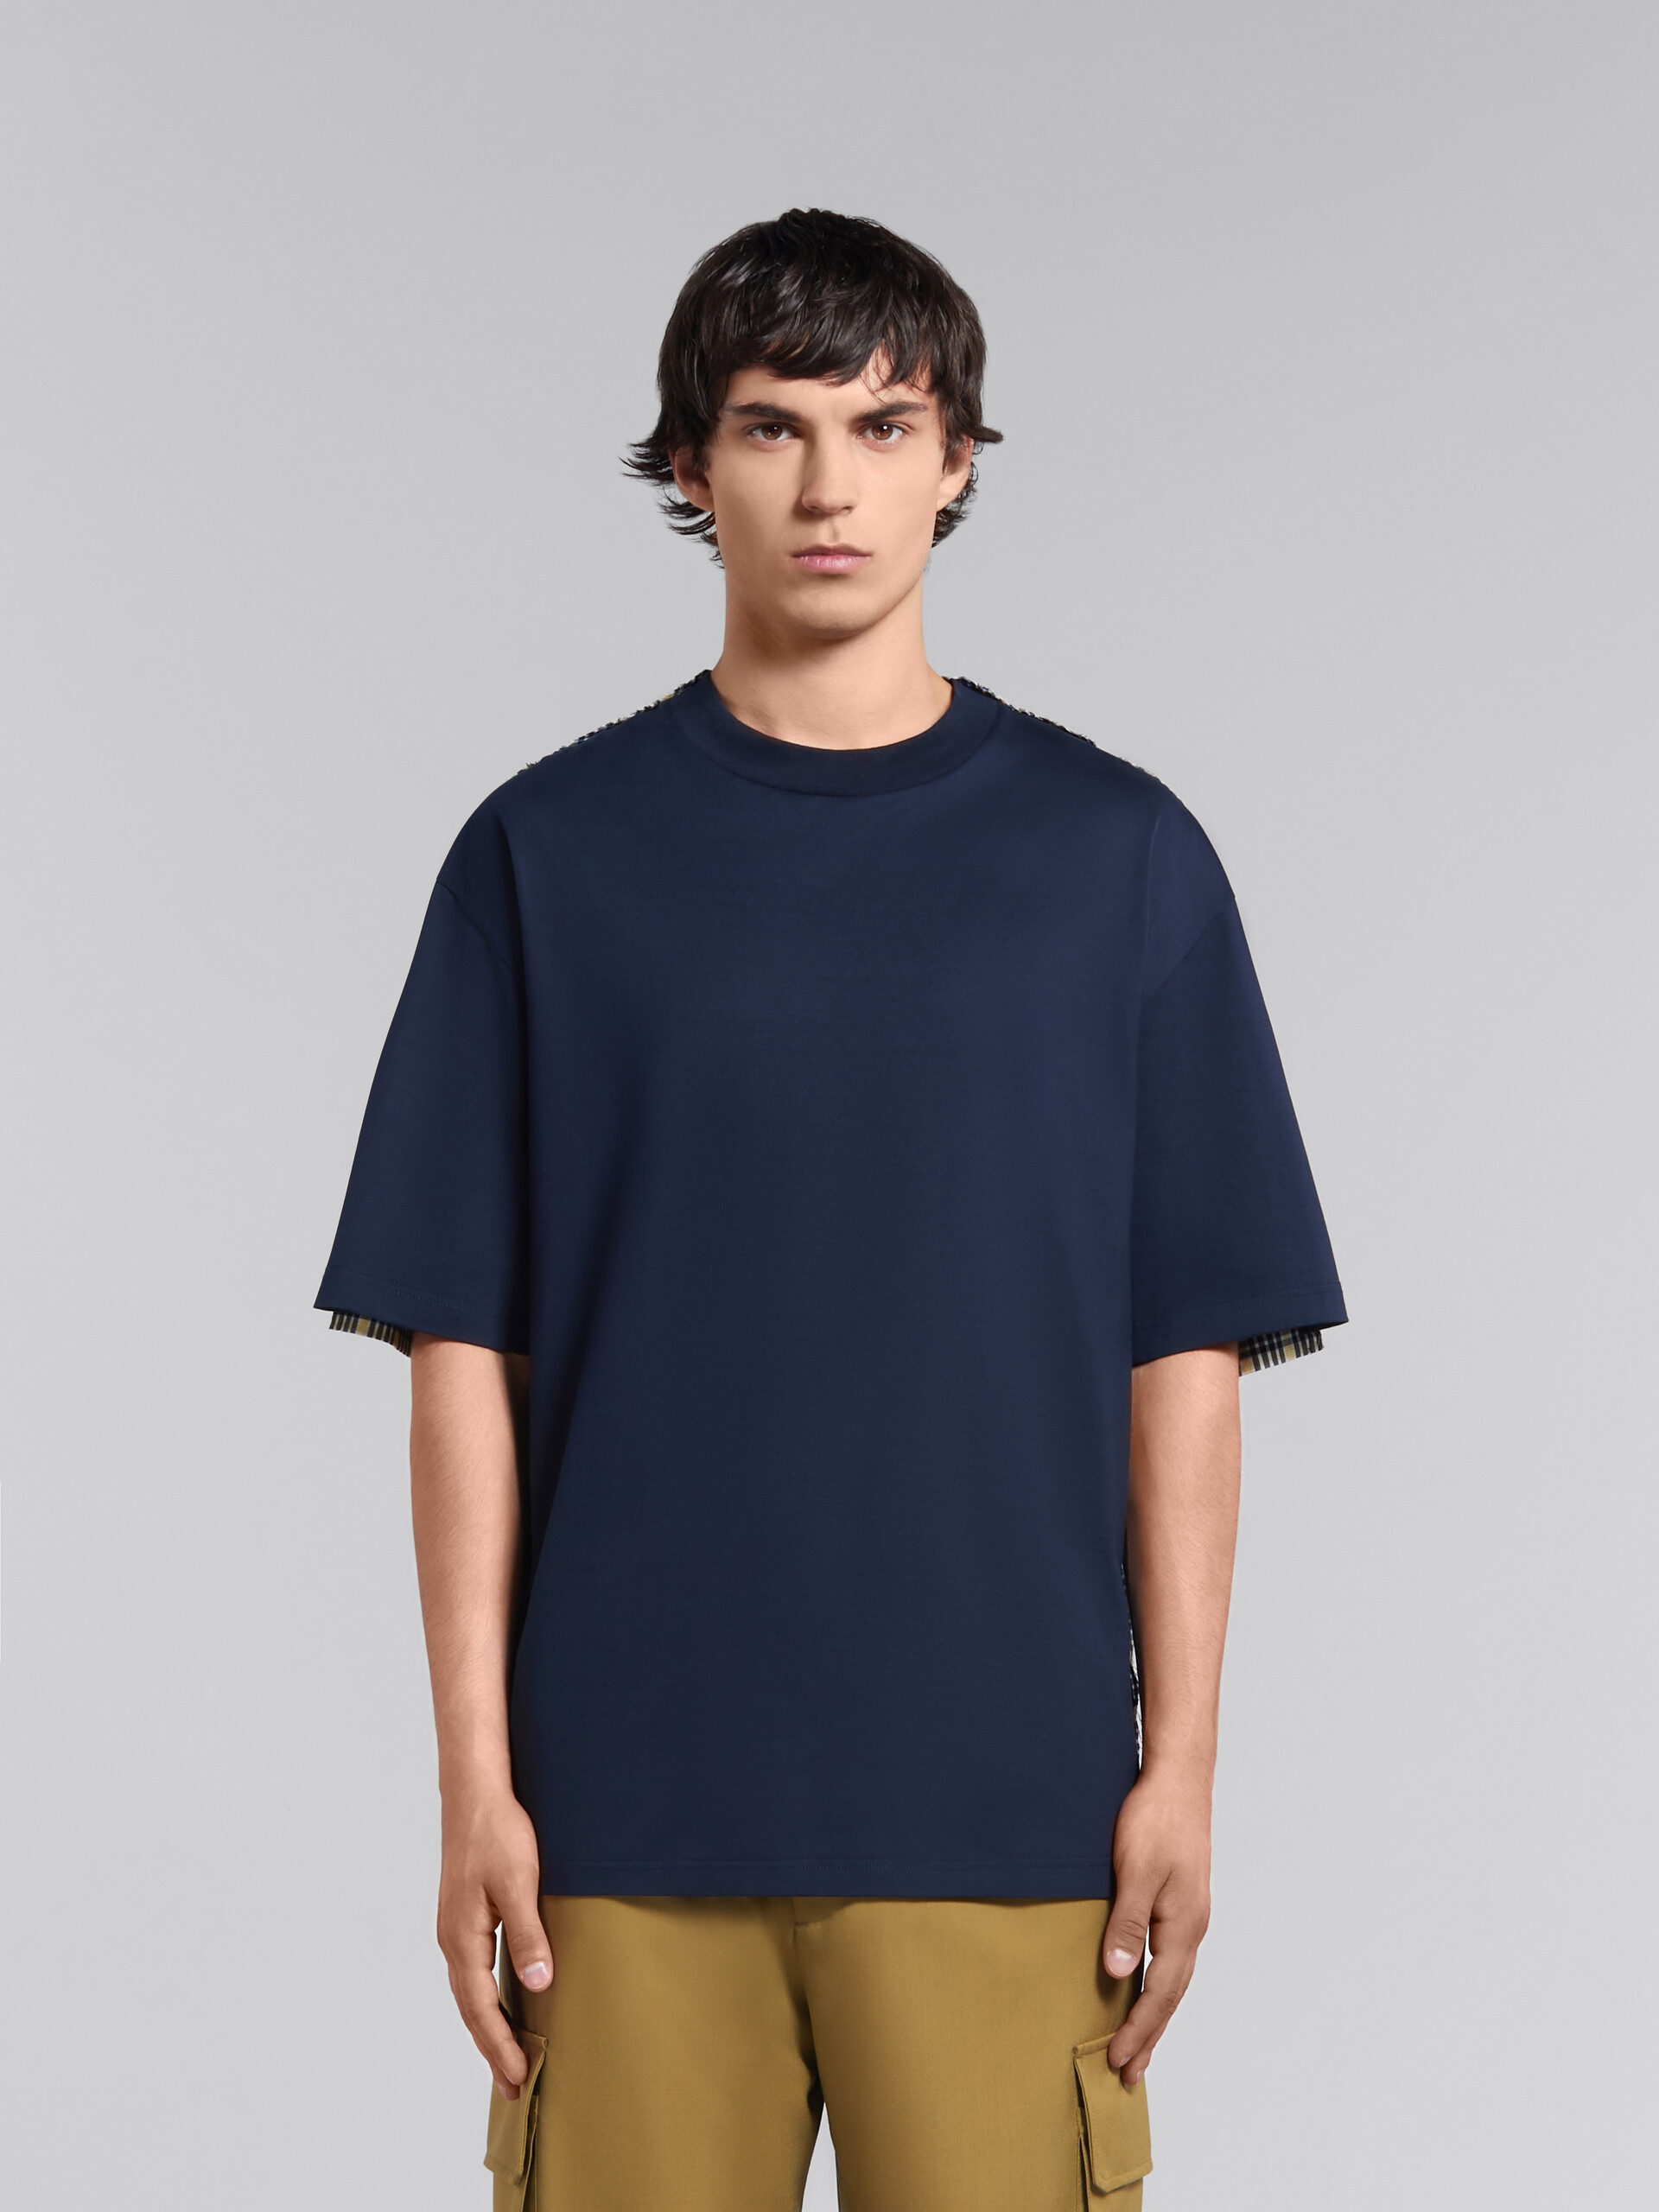 Camiseta azul intenso de algodón ecológico con rayas en la espalda - Camisetas - Image 2